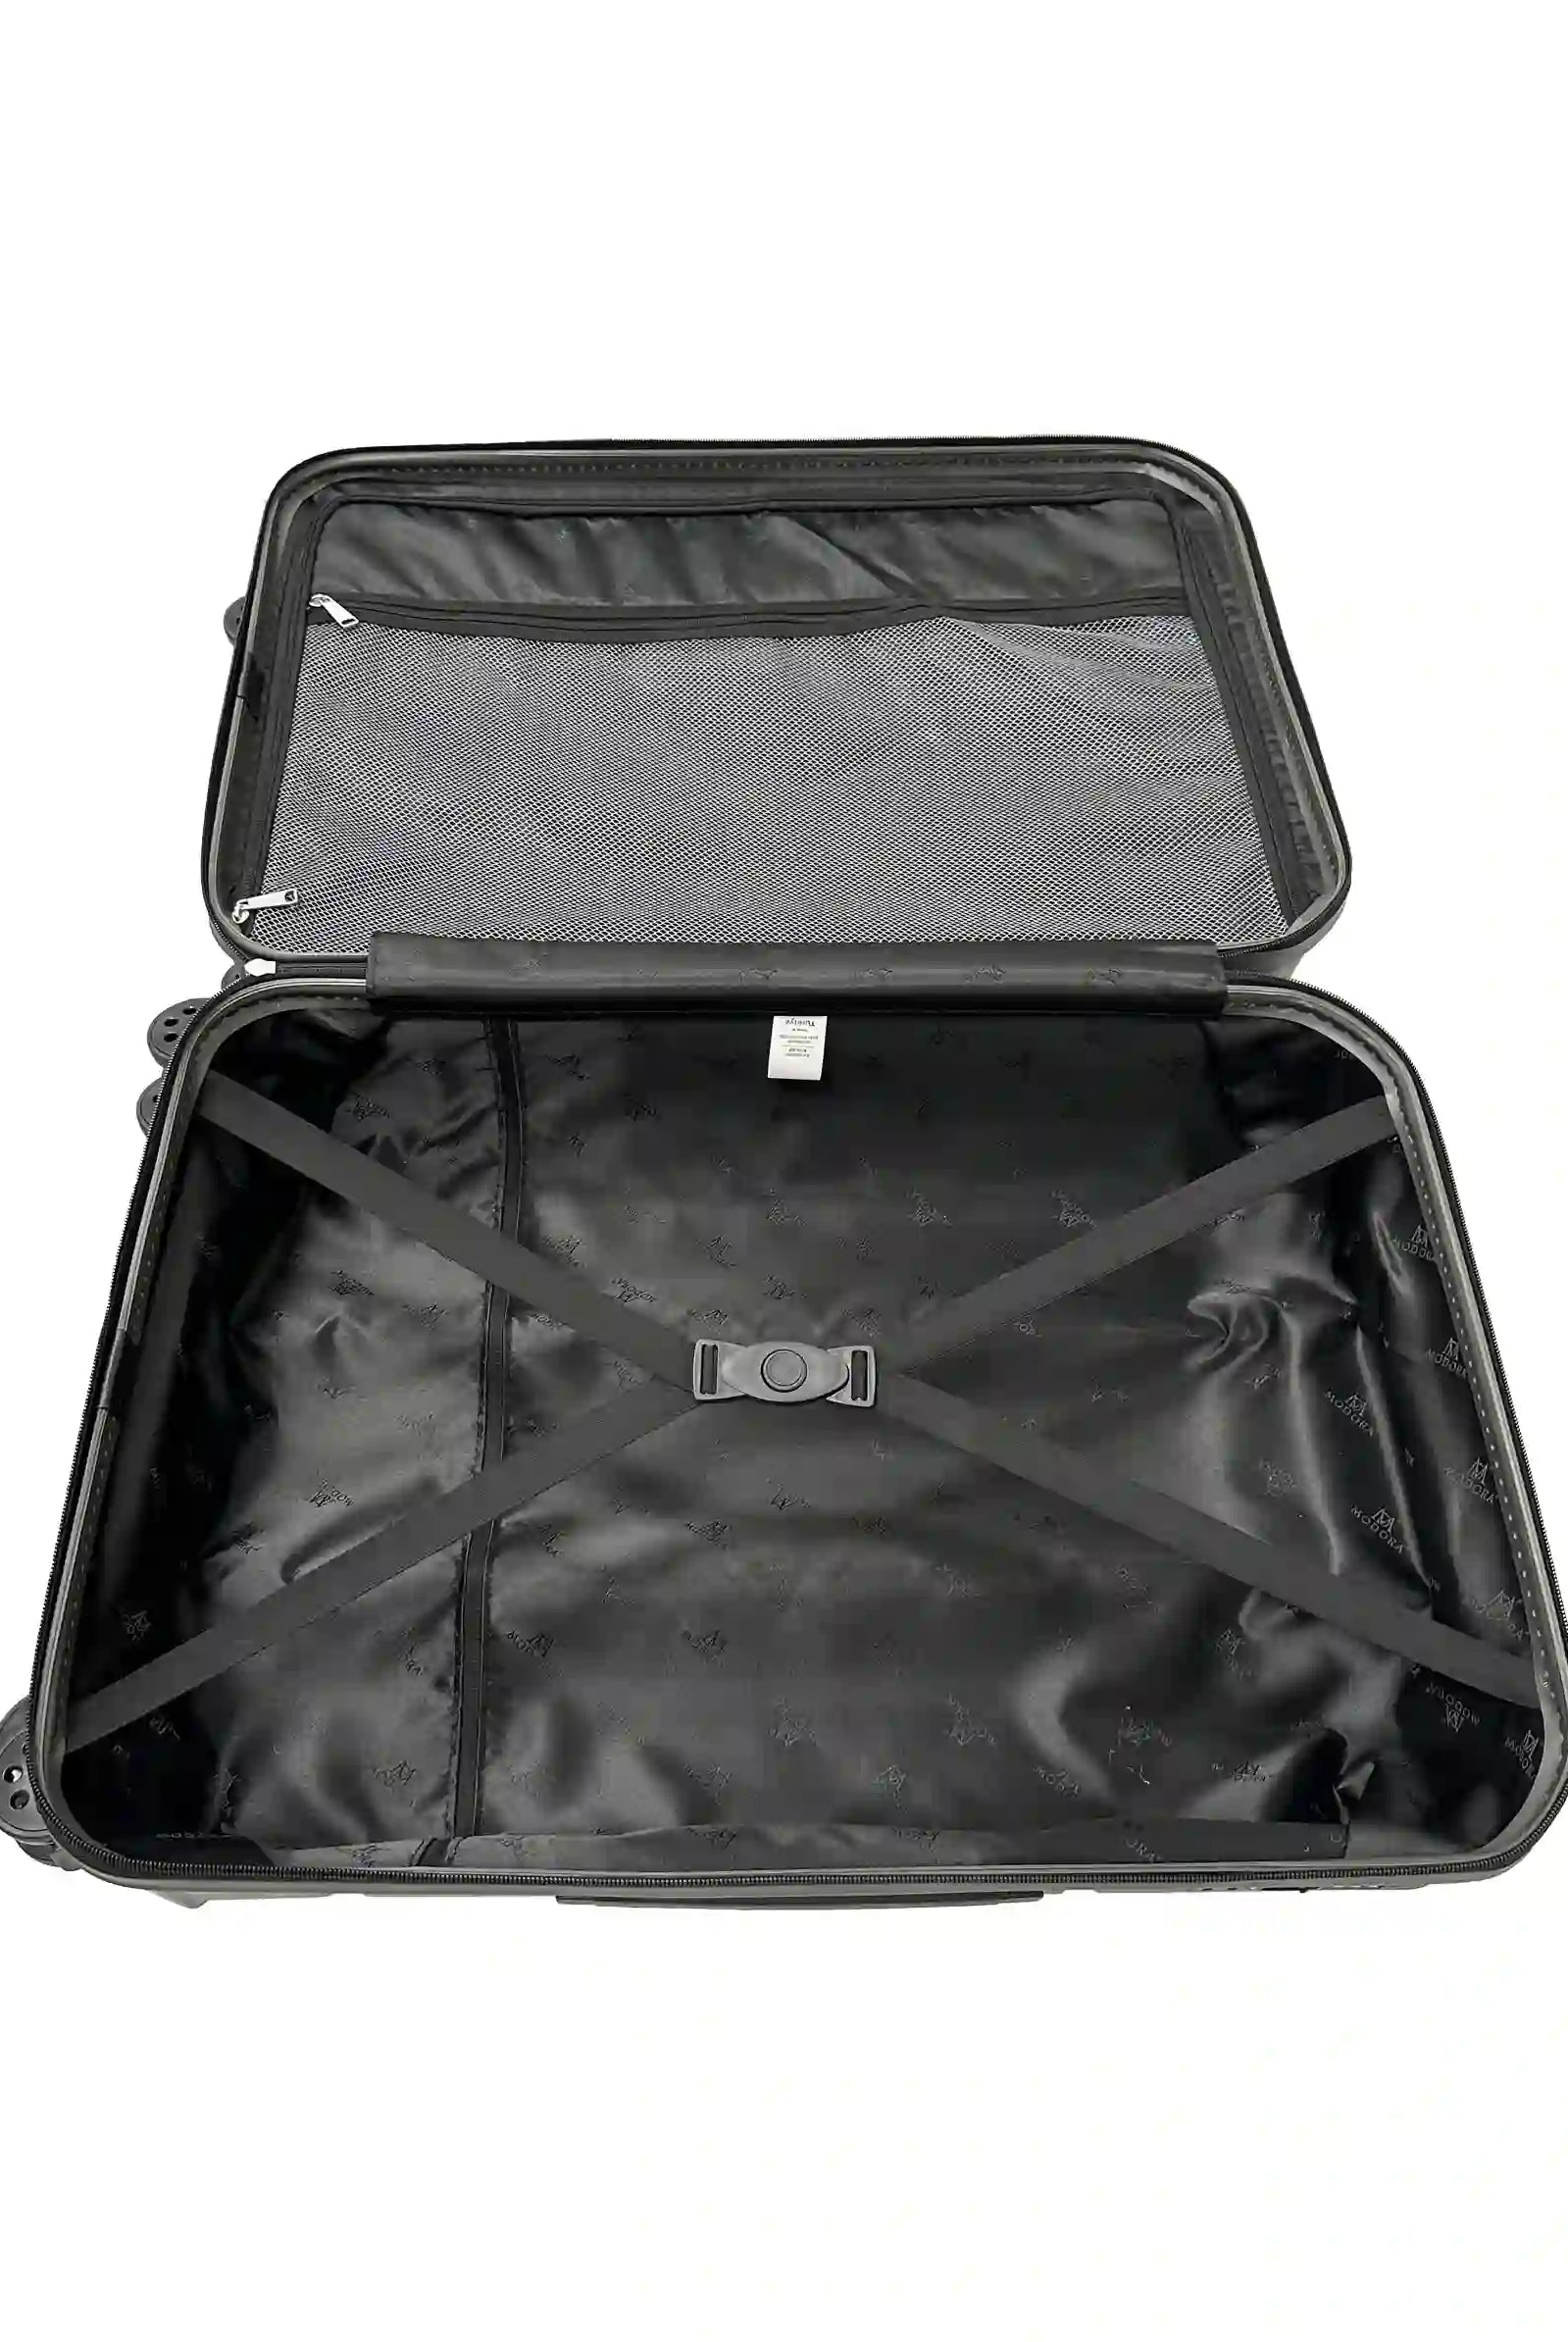 jasmine dark grey large suitcase